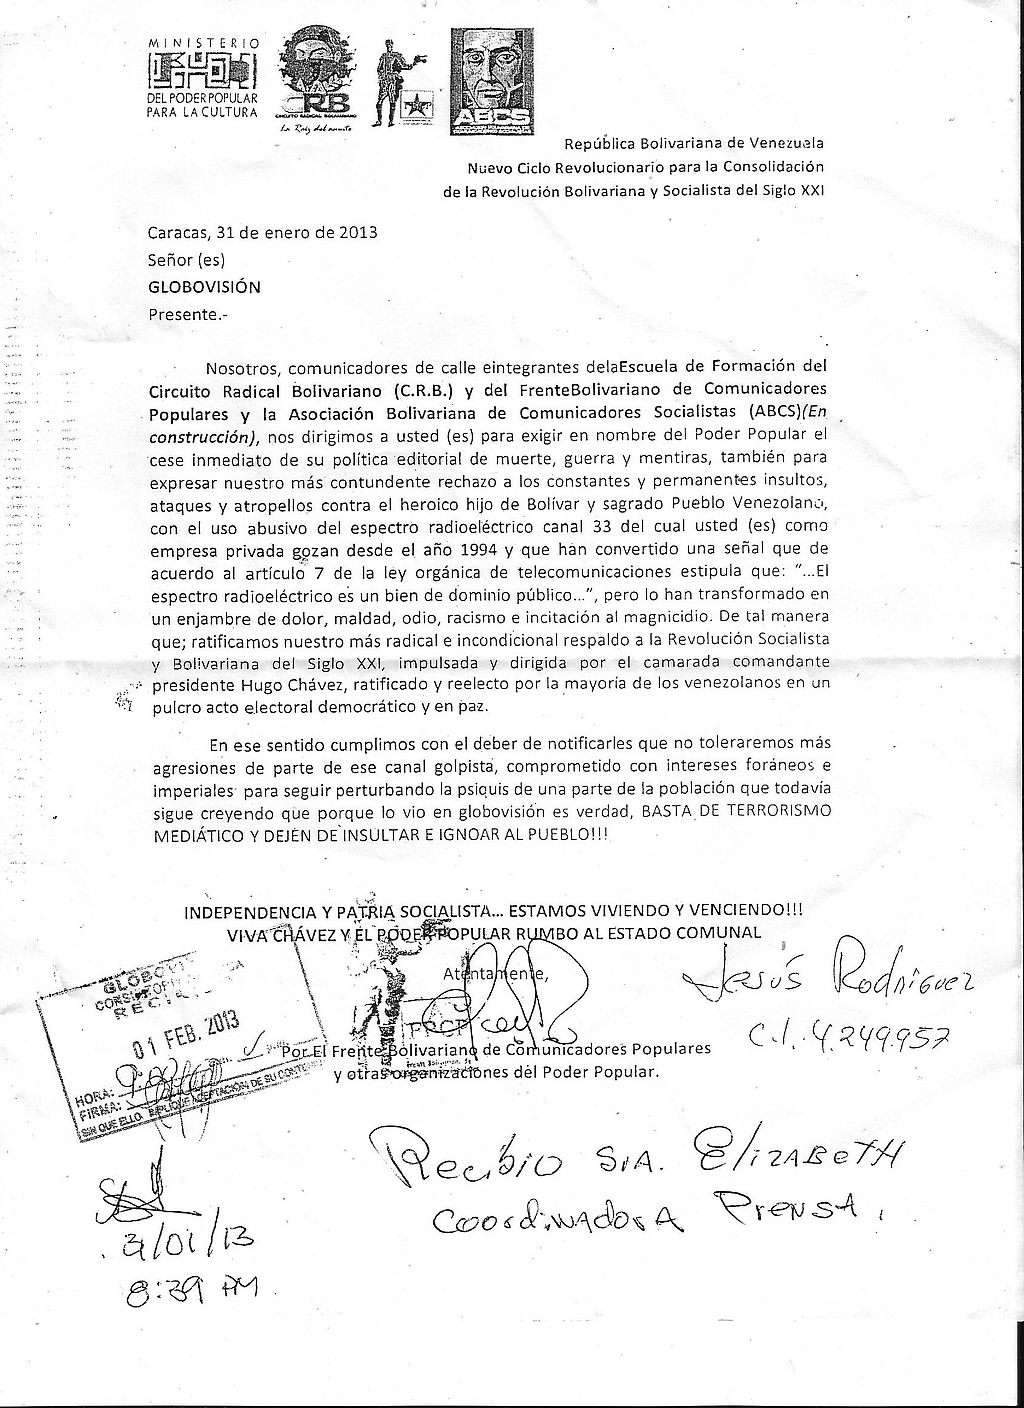 Carta de los colectivos a Globovisión, firmada como recibida